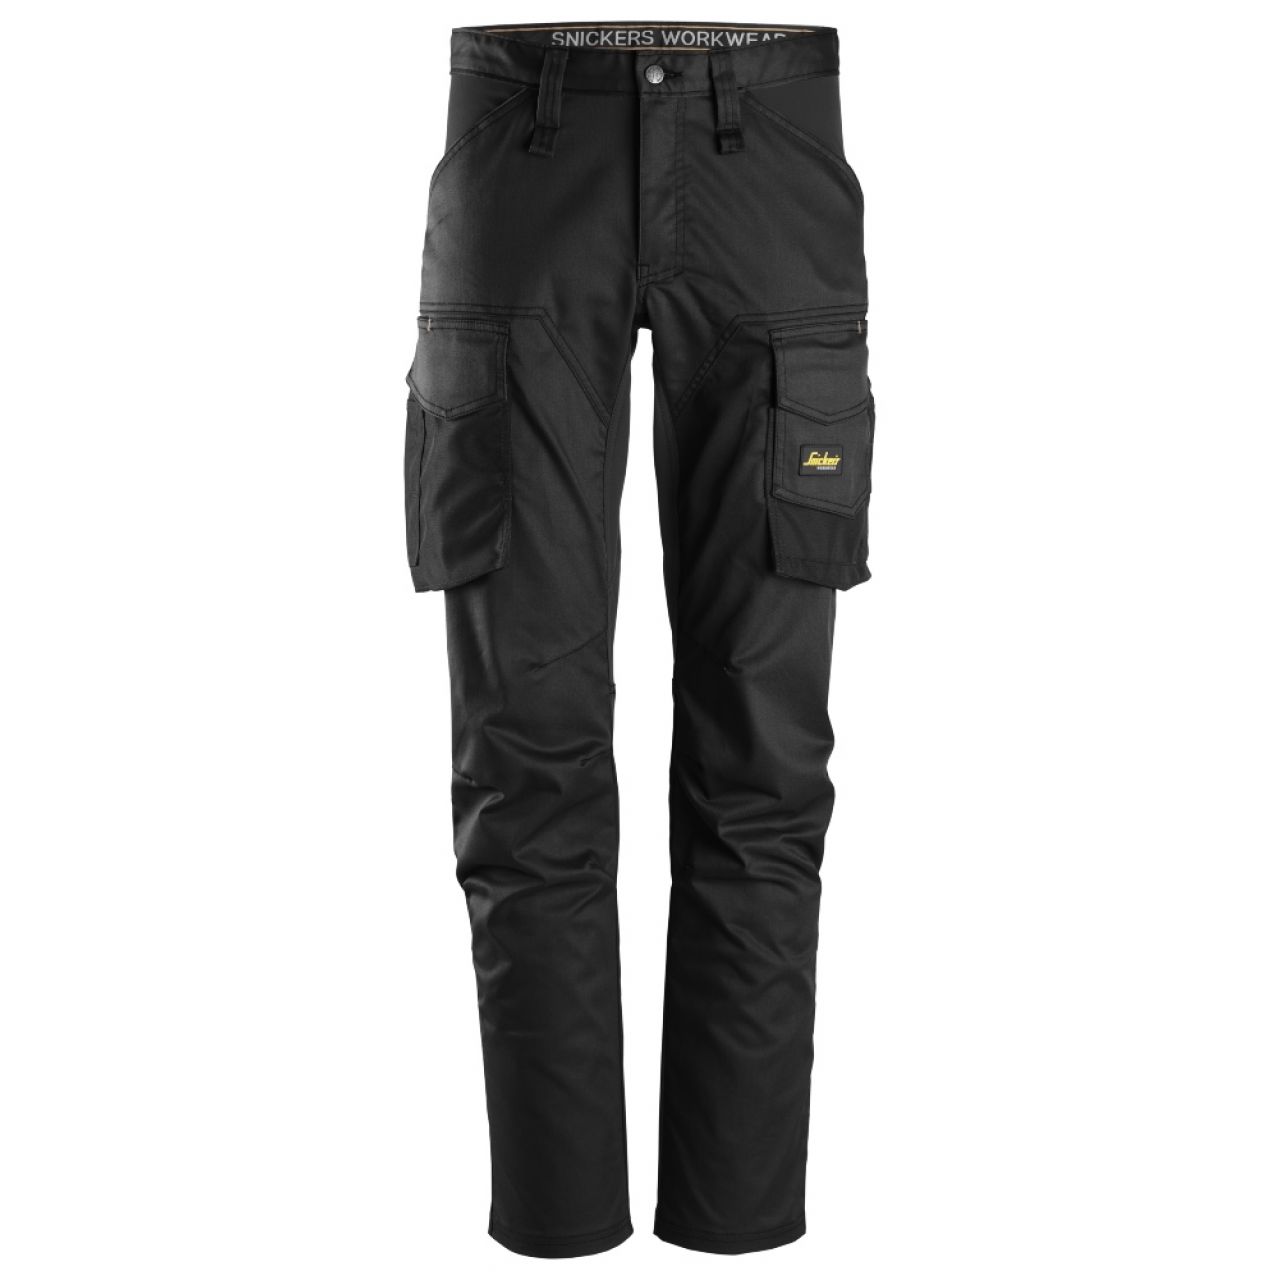 6803 Pantalones largos de trabajo elásticos sin bolsillos para las rodilleras AllroundWork negro talla 54